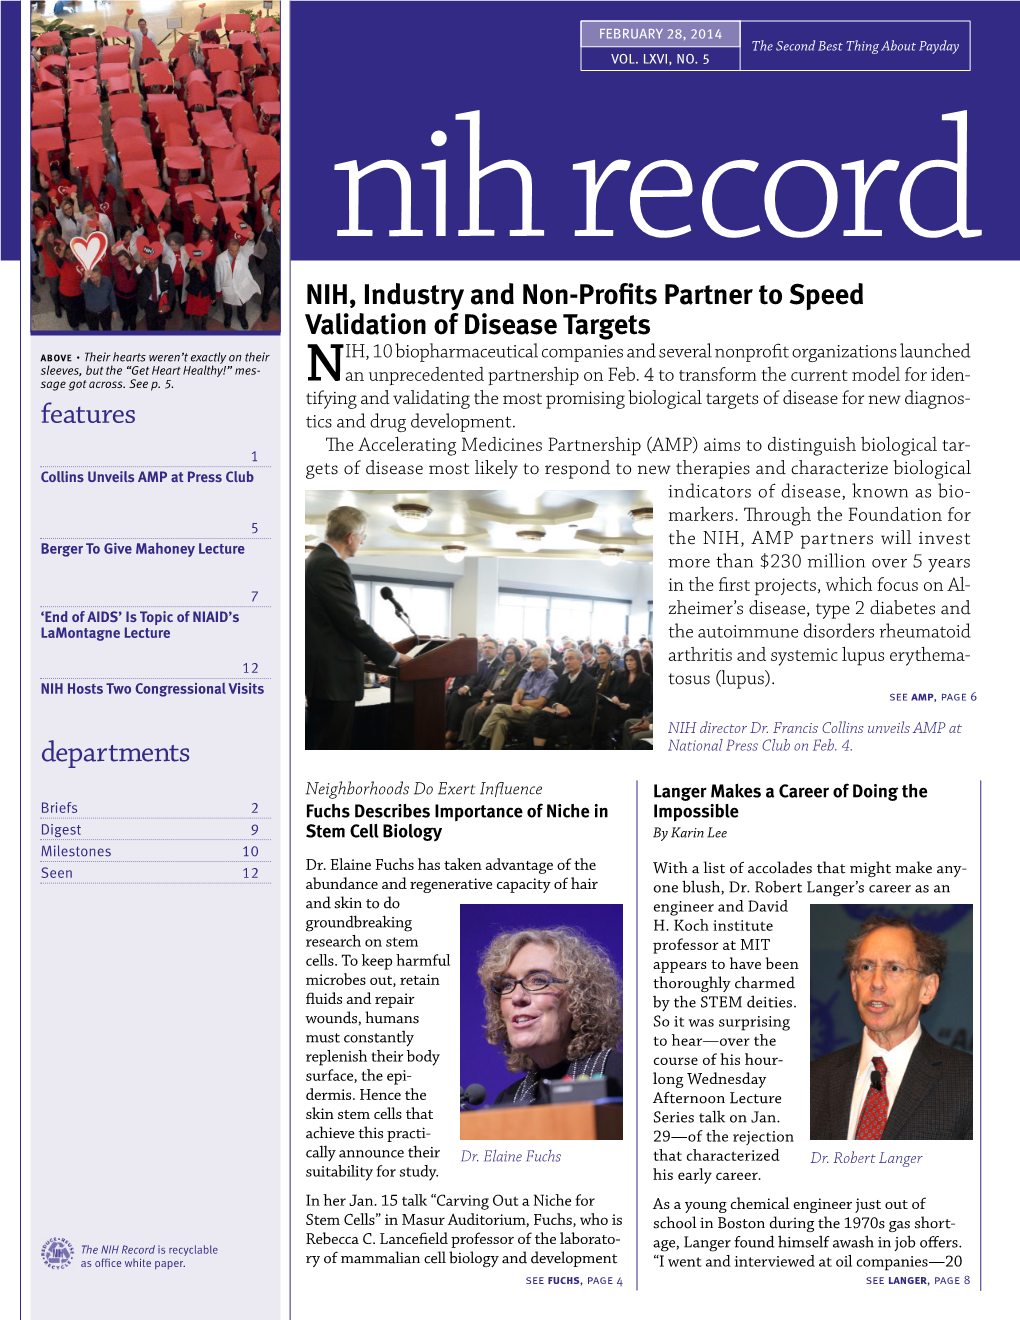 February 28, 2014, NIH Record, Vol. LXVI, No. 5